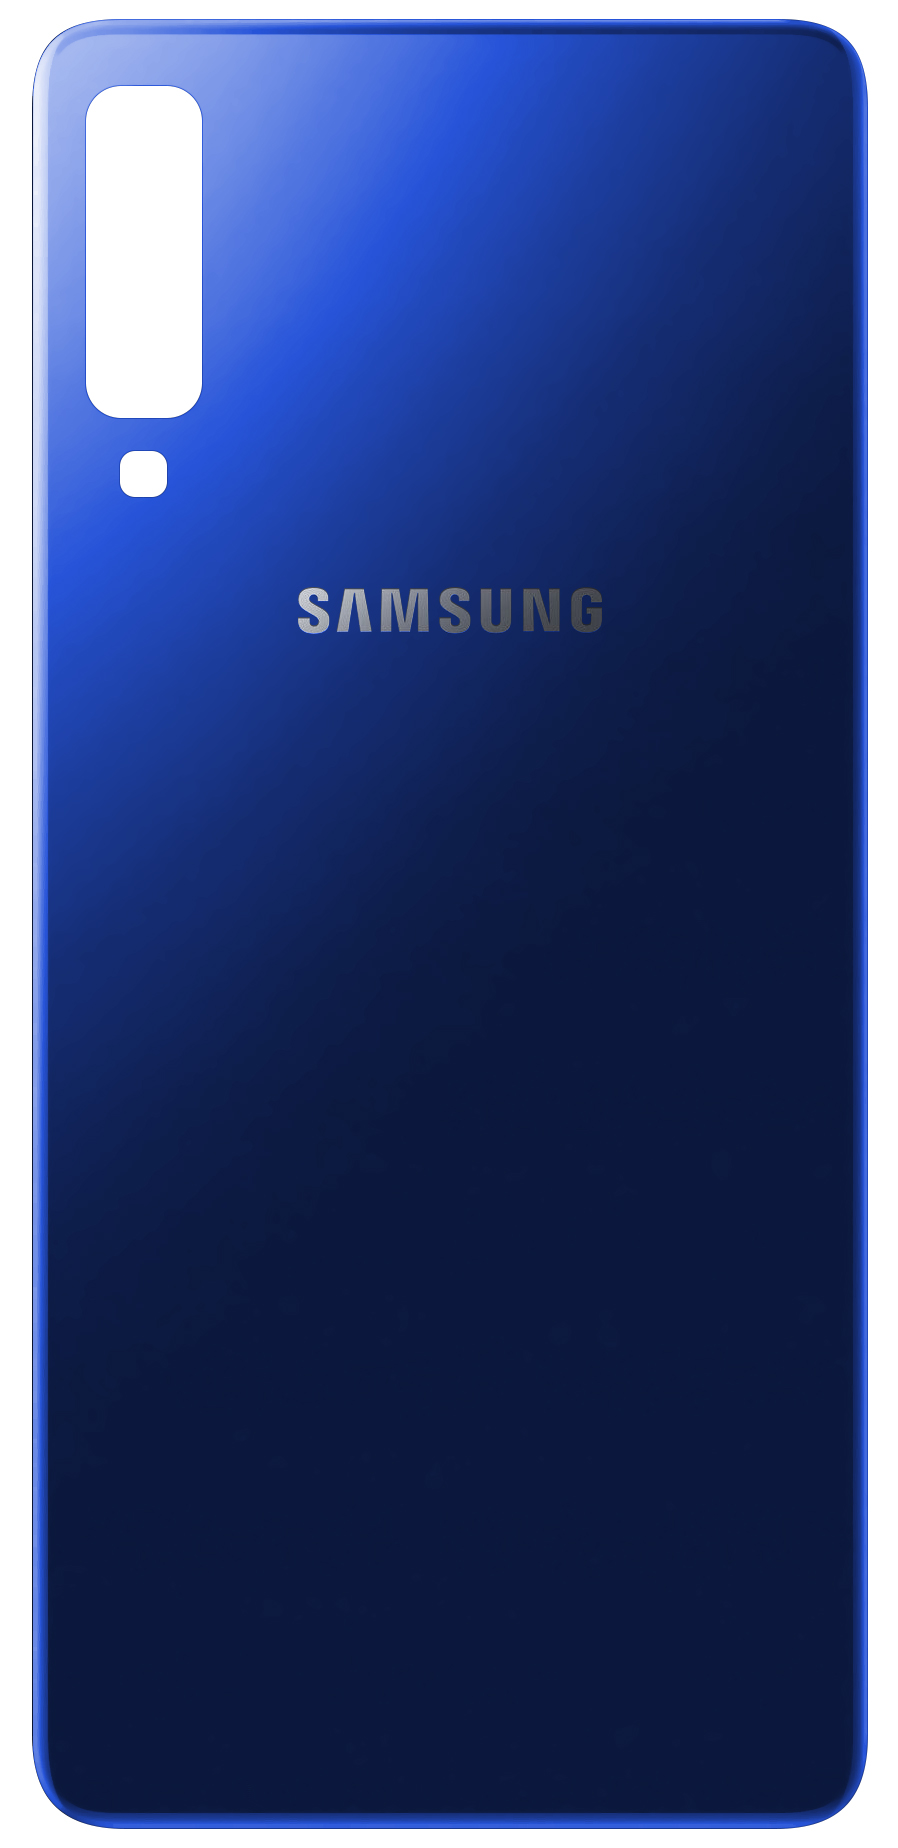 capac-baterie-samsung-galaxy-a7--282018-29-a750-2C-albastru-inchis